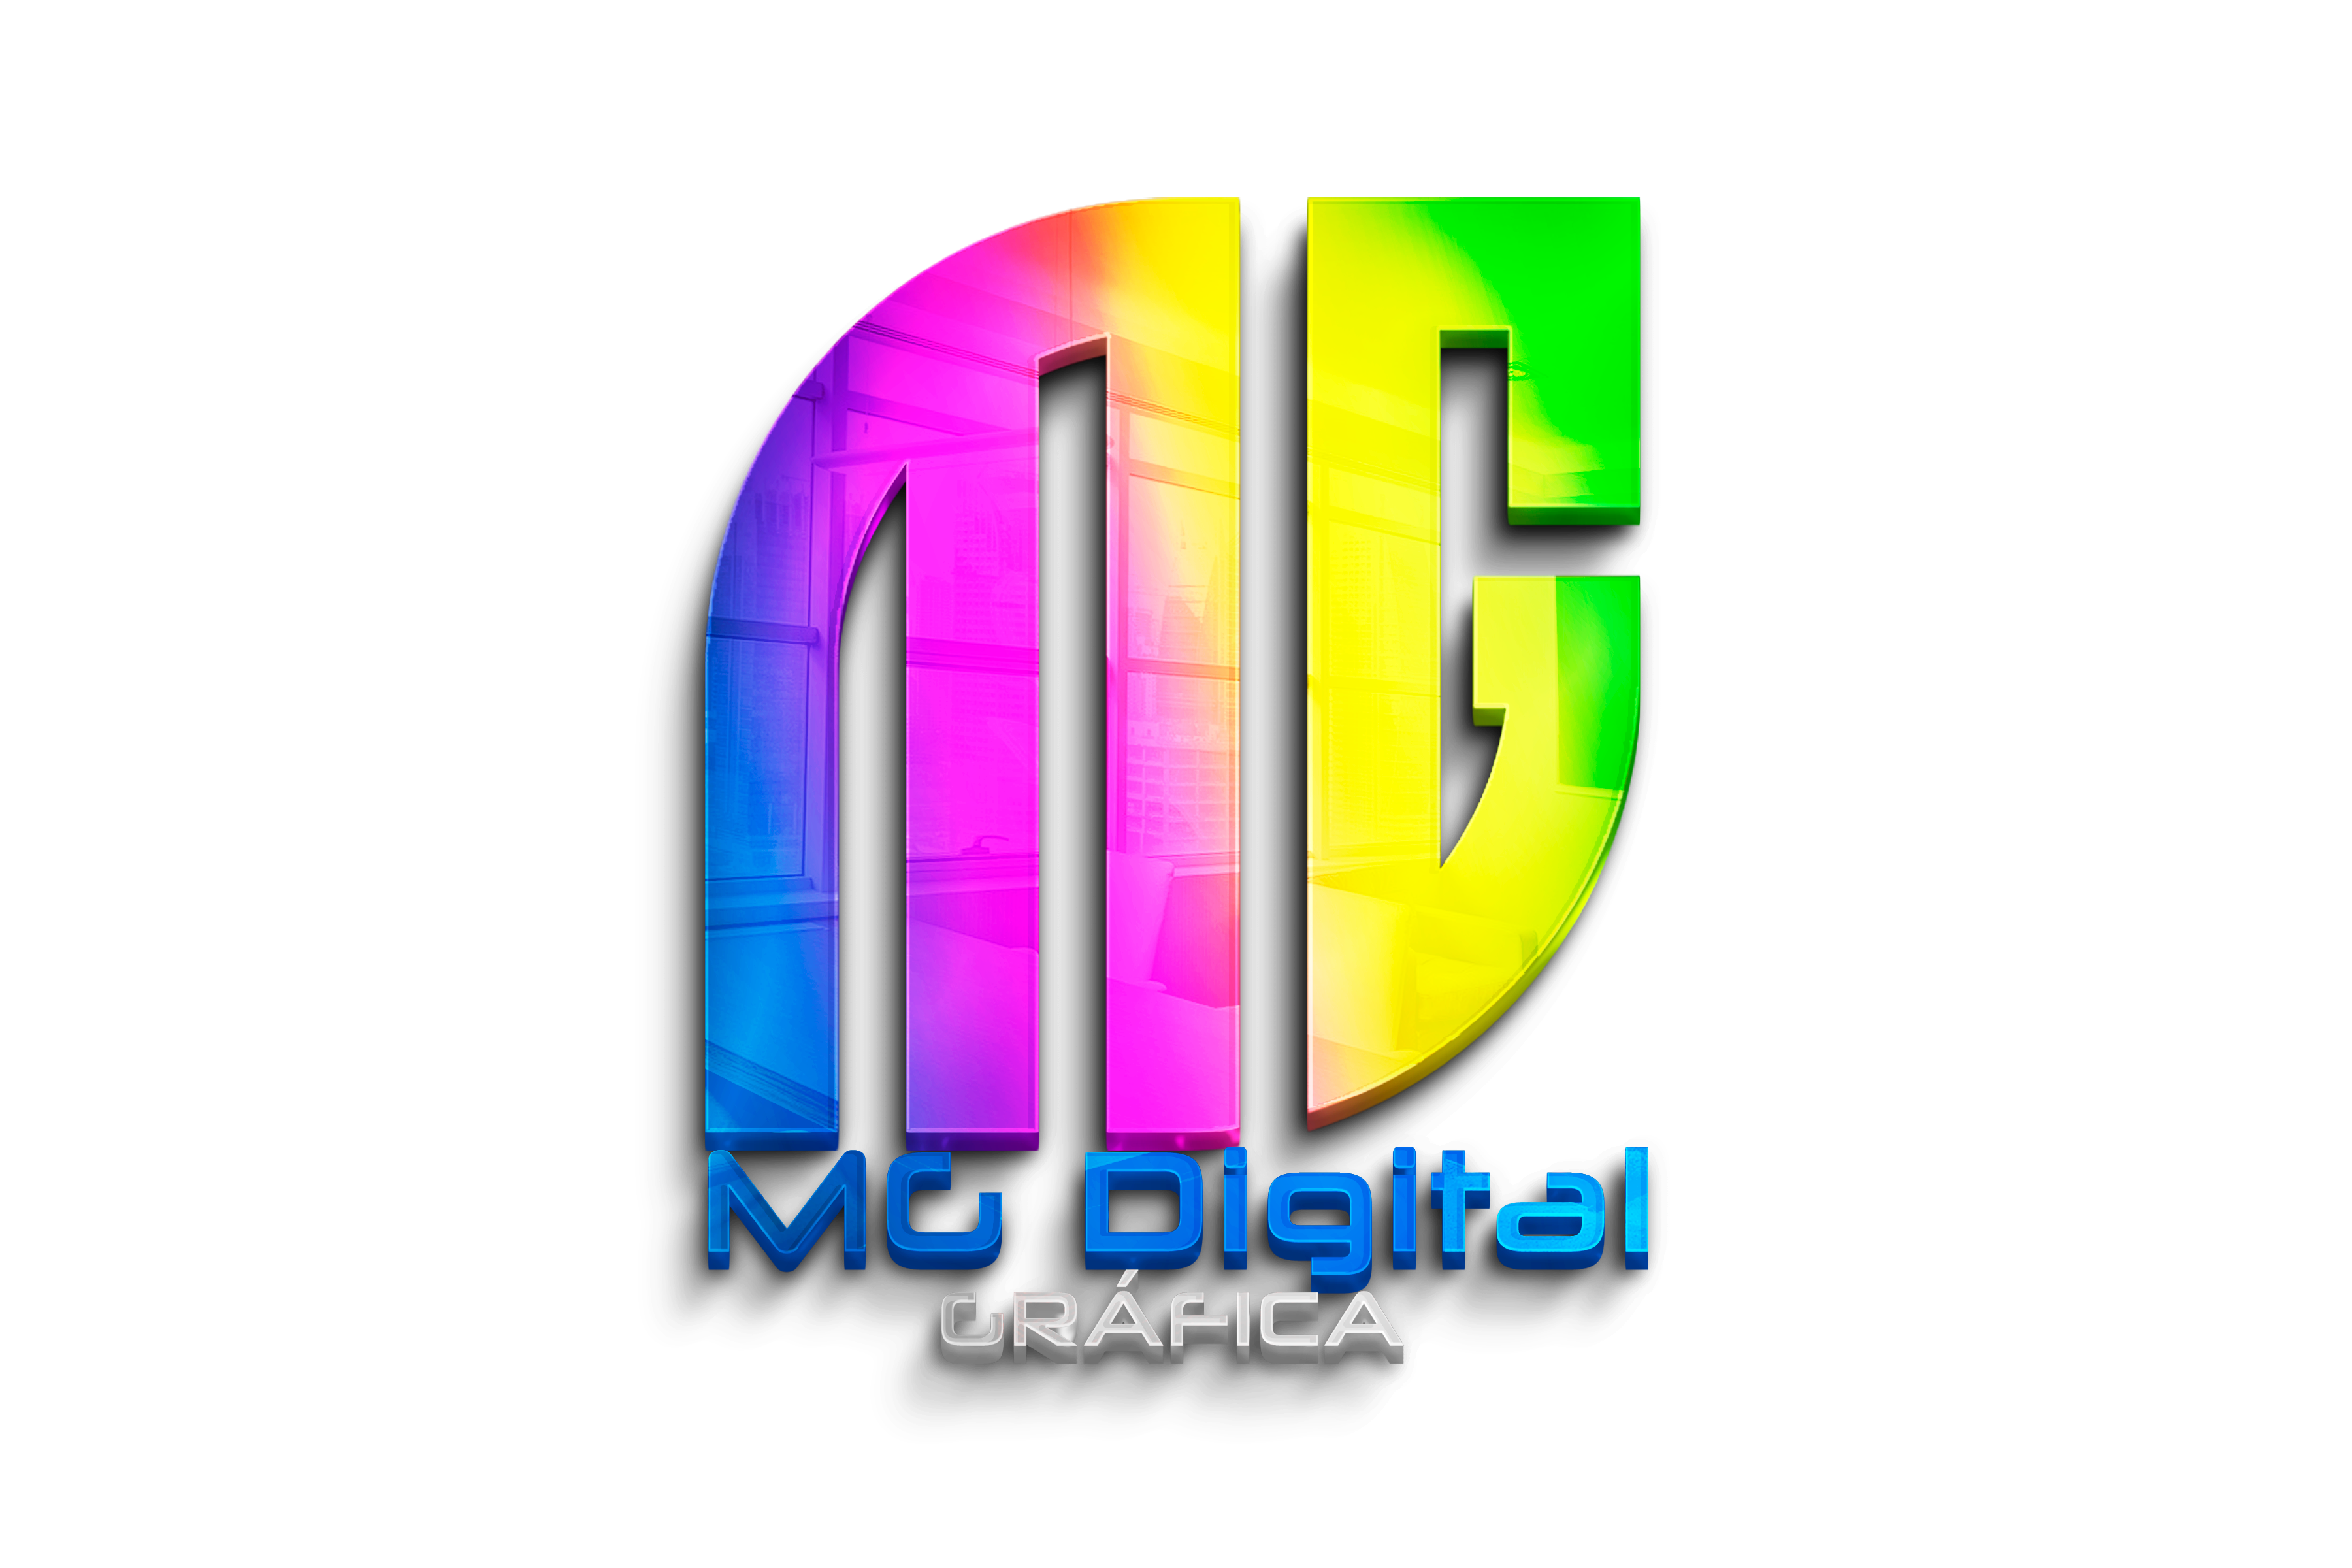 Mogi Digital